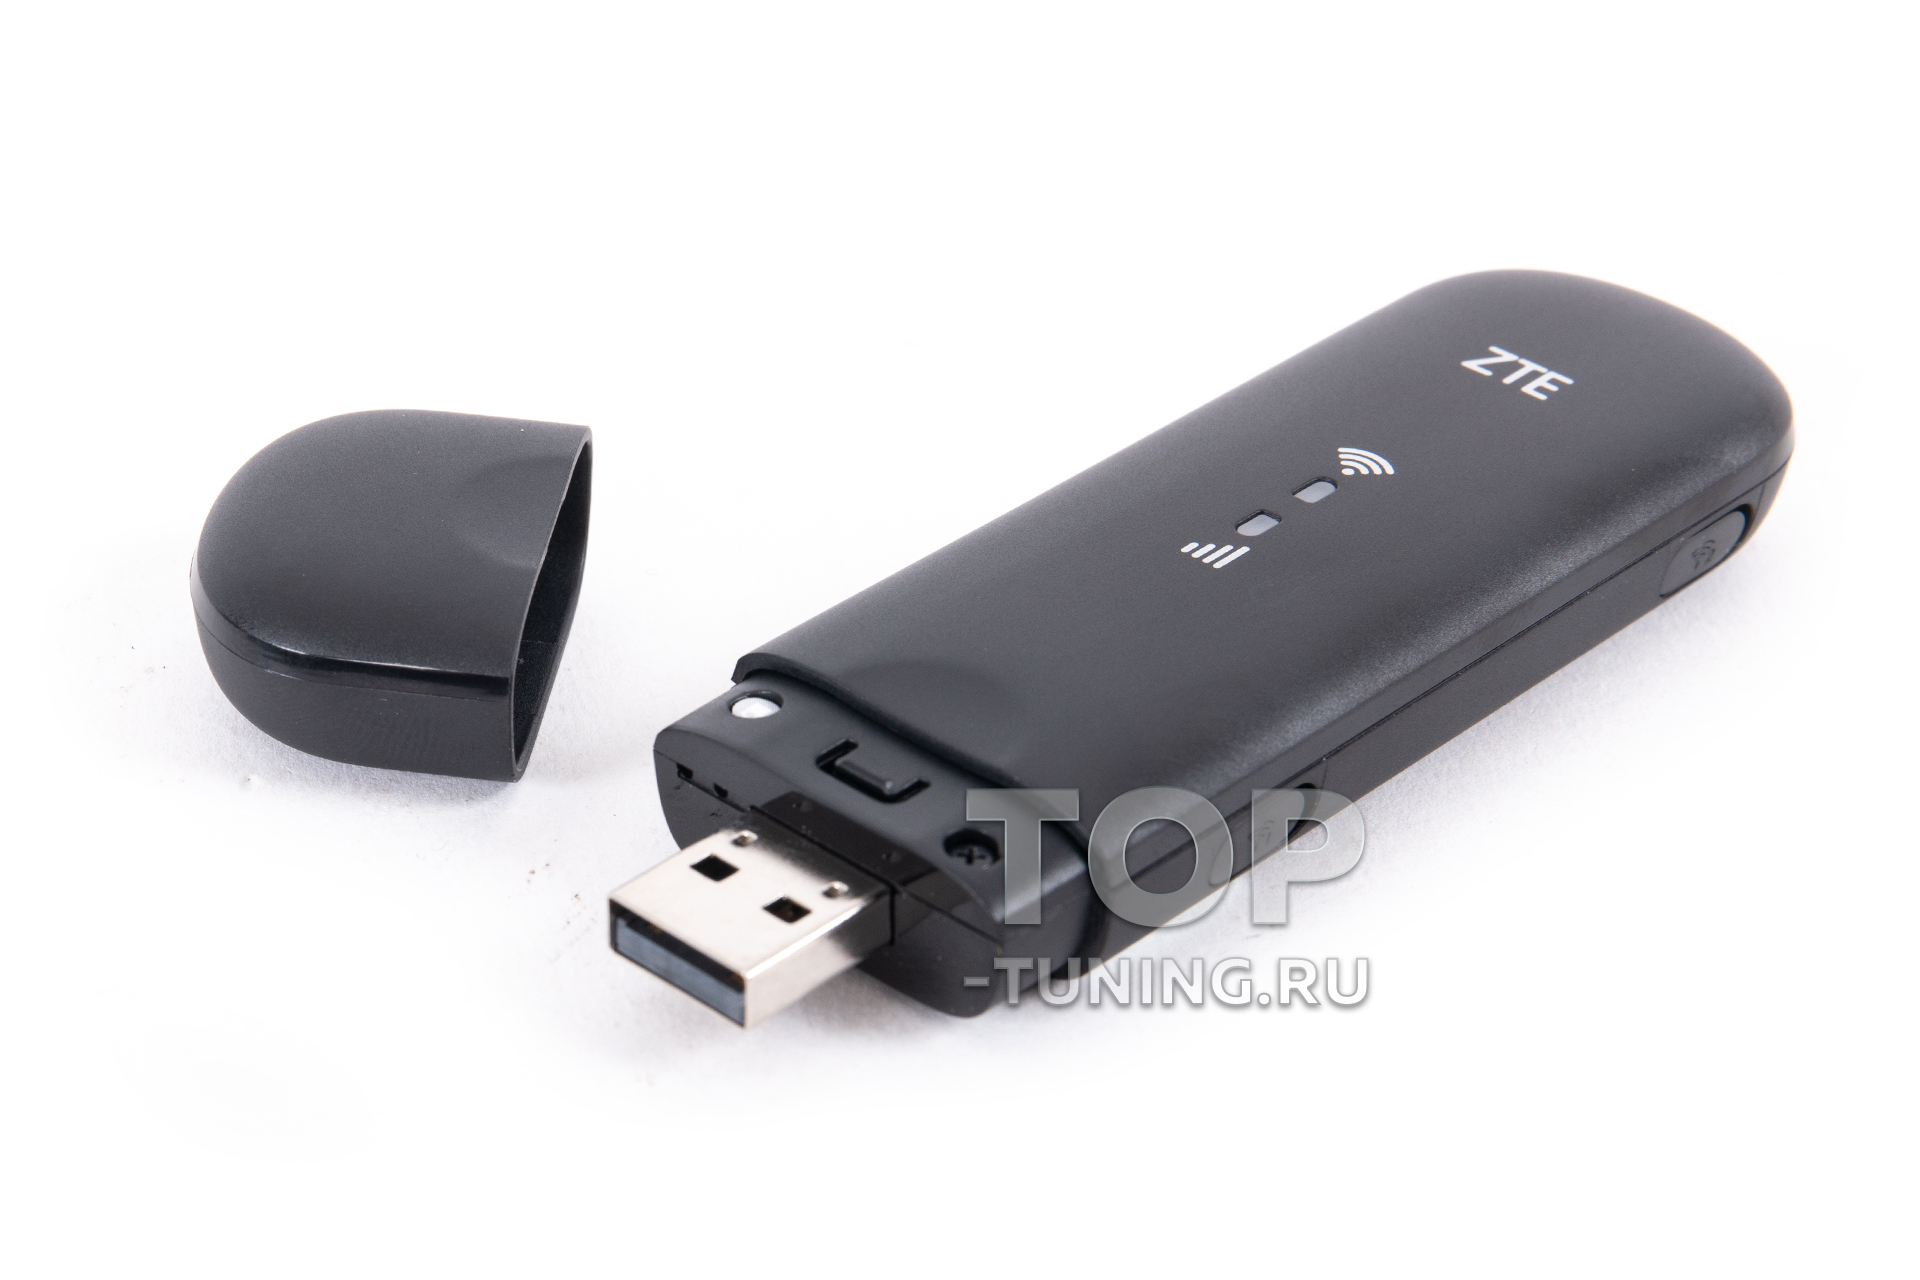 Универсальный USB модем - дополнительное оборудование для автомобилей